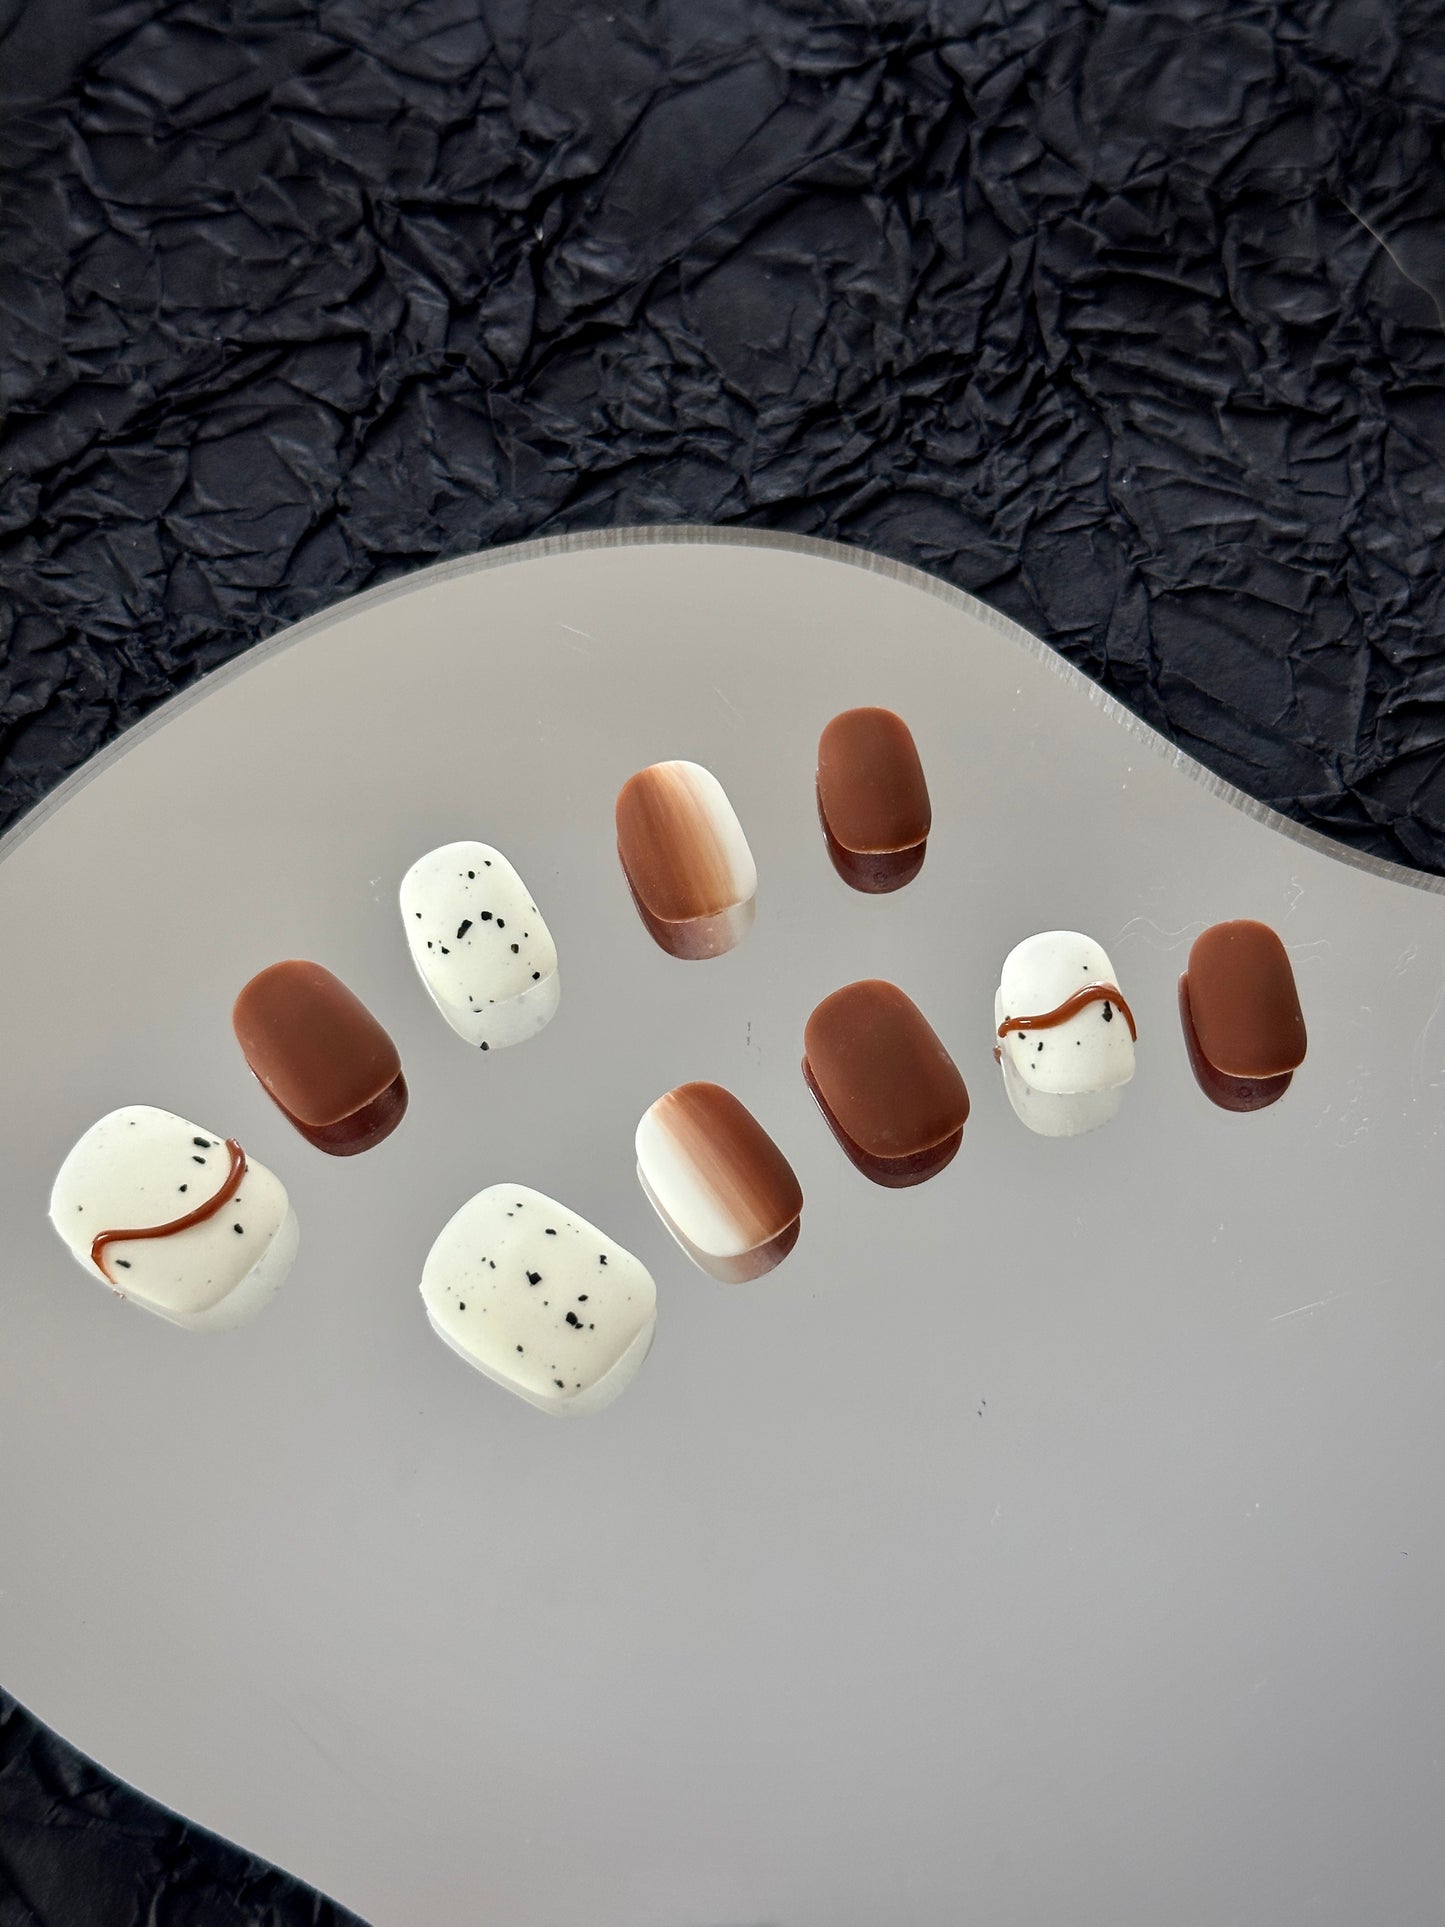 Chocolate pattern